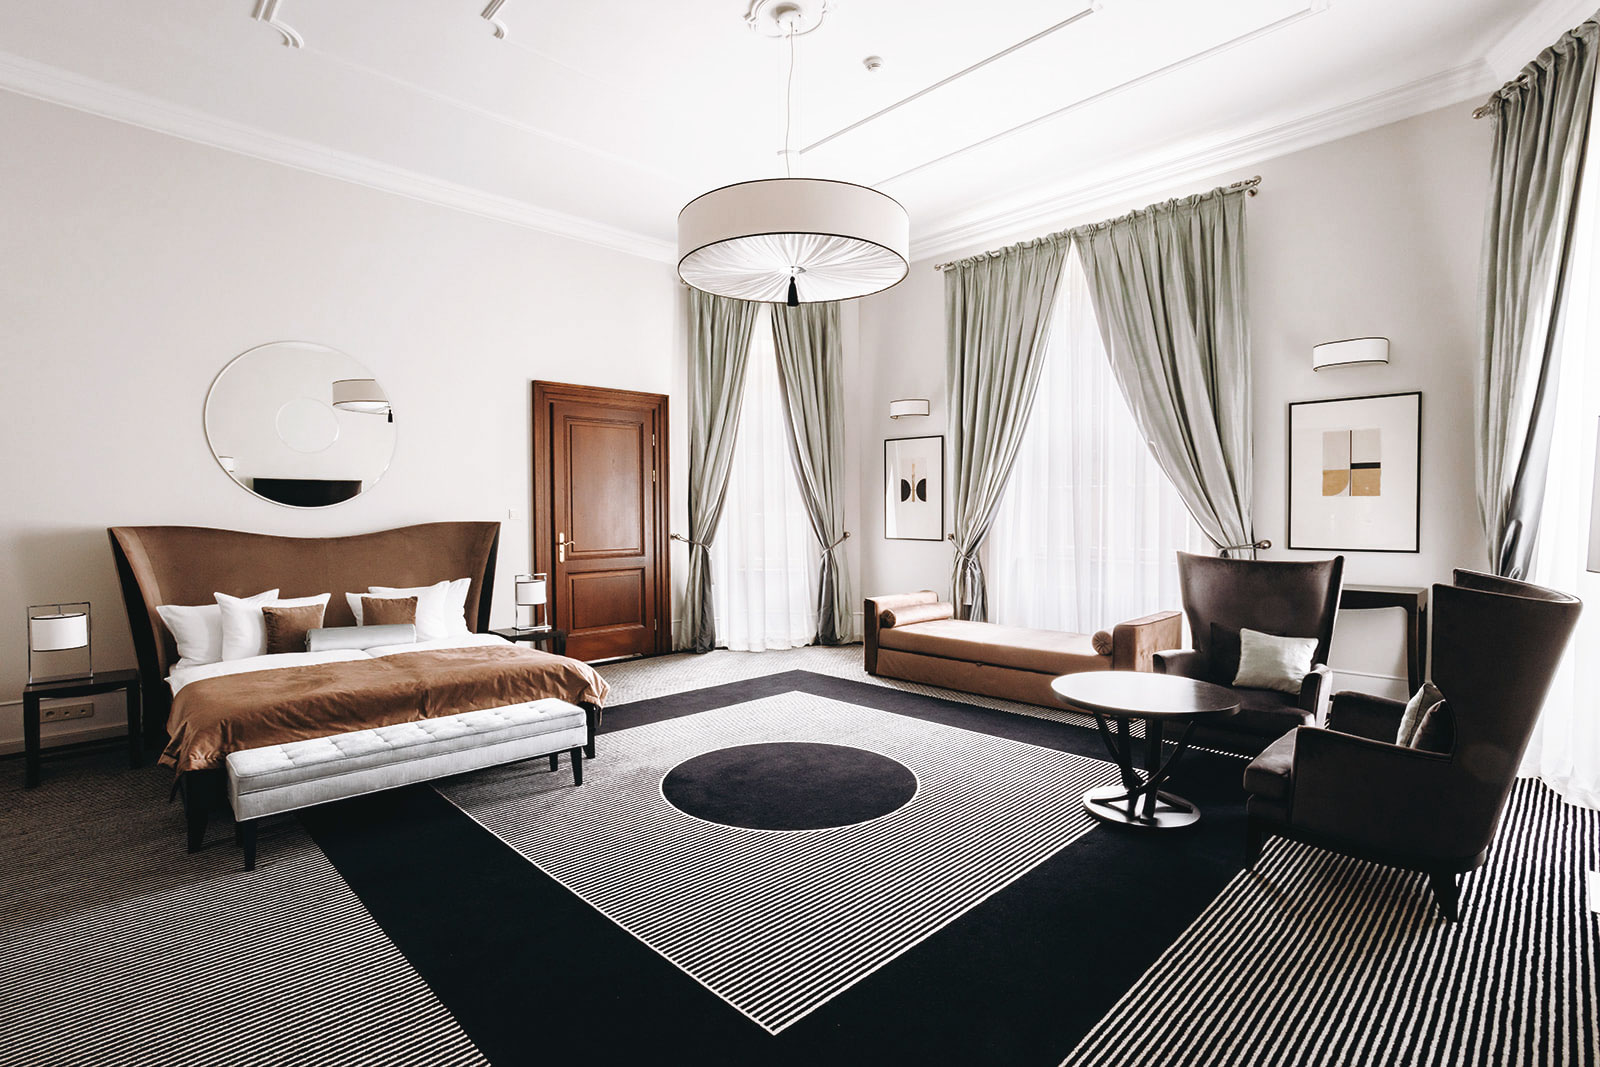 Wnętrze pokoju hotelowego w Pałacu Goetz z łóżkiem dwuosobowym